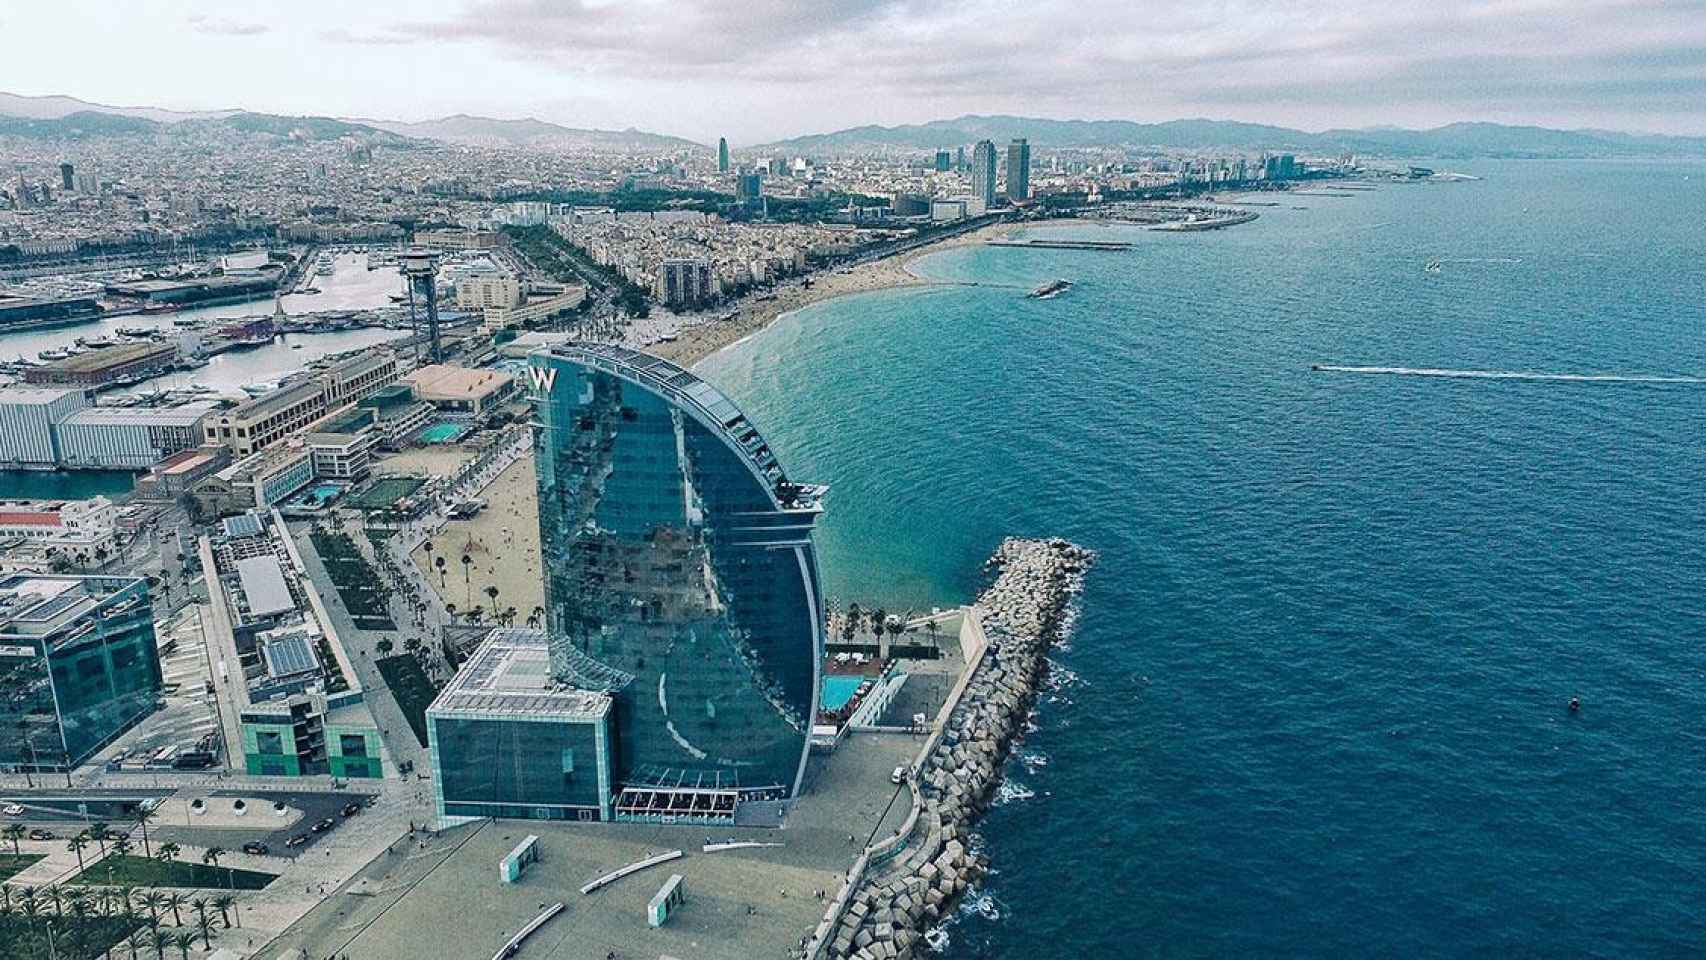 Vista de Barcelona desde un mirador, uno de los planes gratuitos más interesantes / UNSPLASH